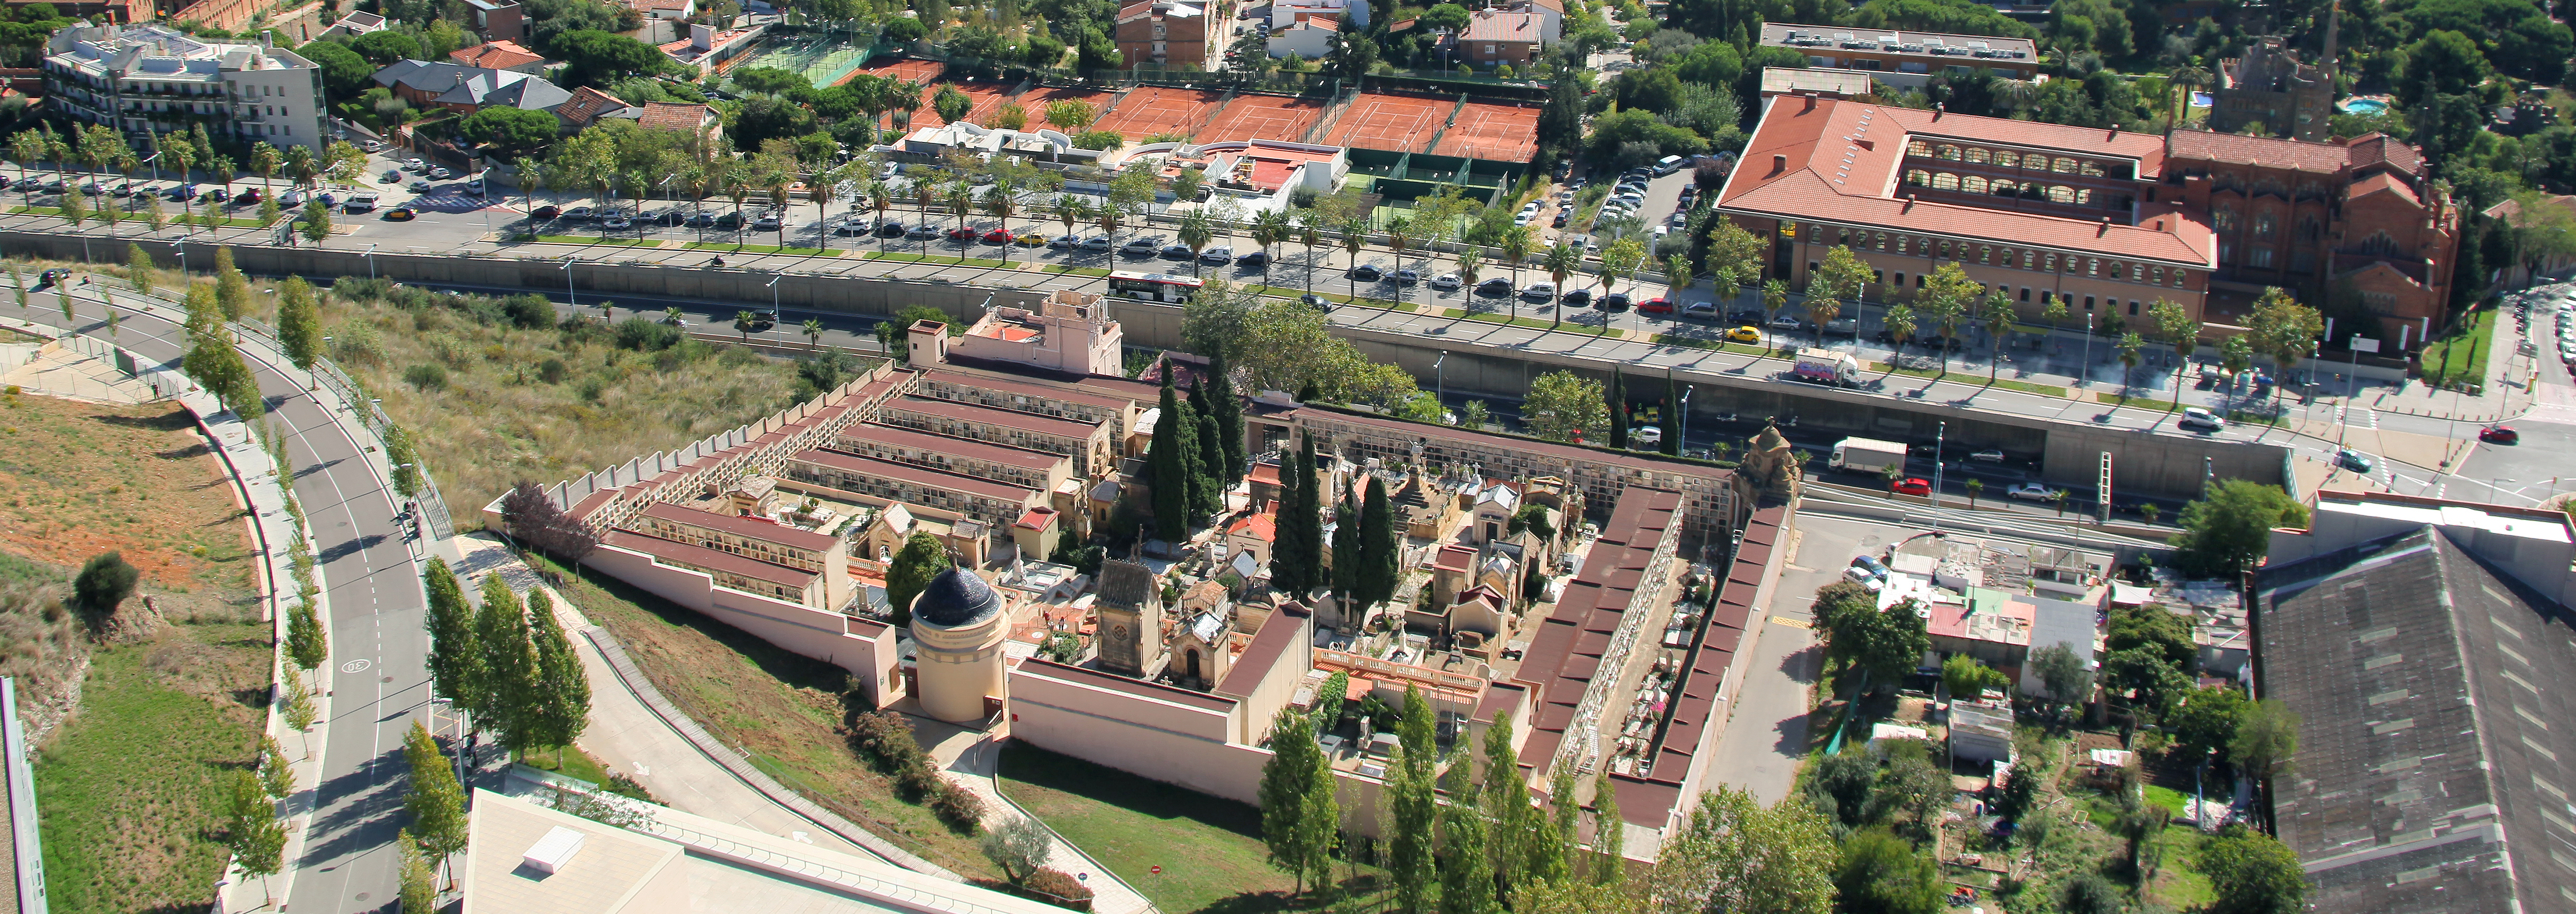 Cementerio Sant Gervasi aérea